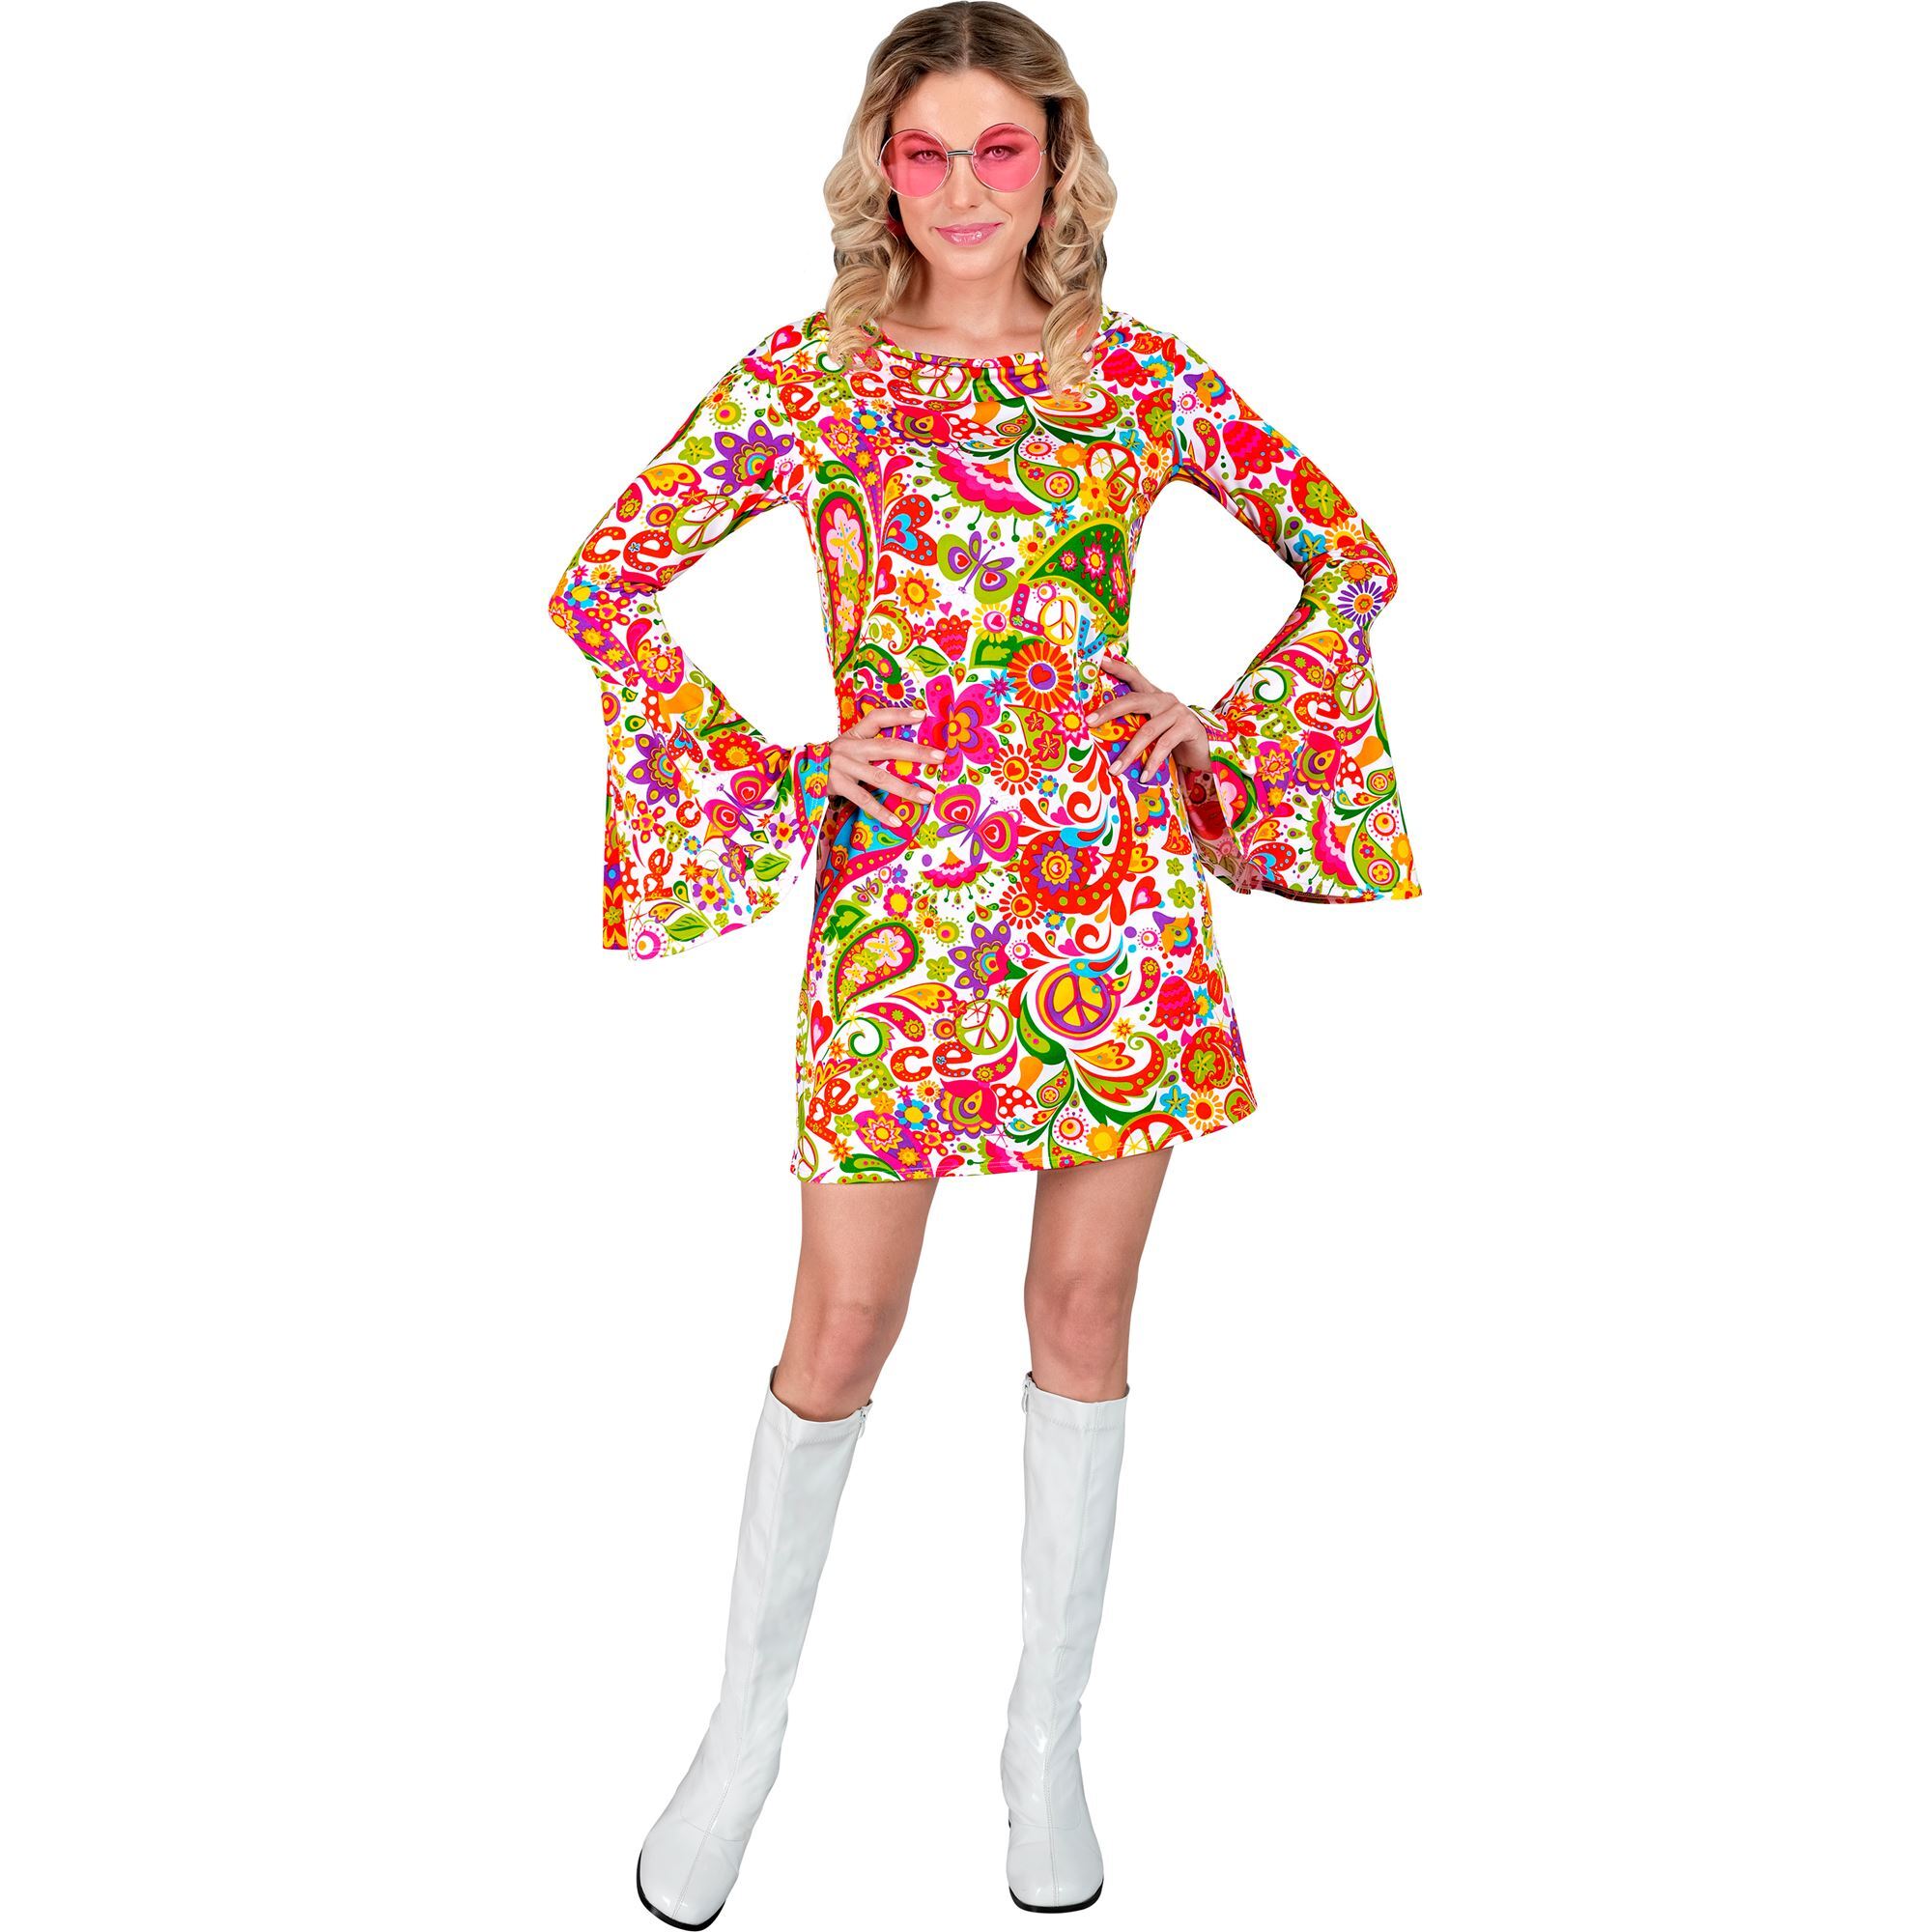 Sixties jurk vrolijke peace en paisley print voor foute party of disco dansfeest